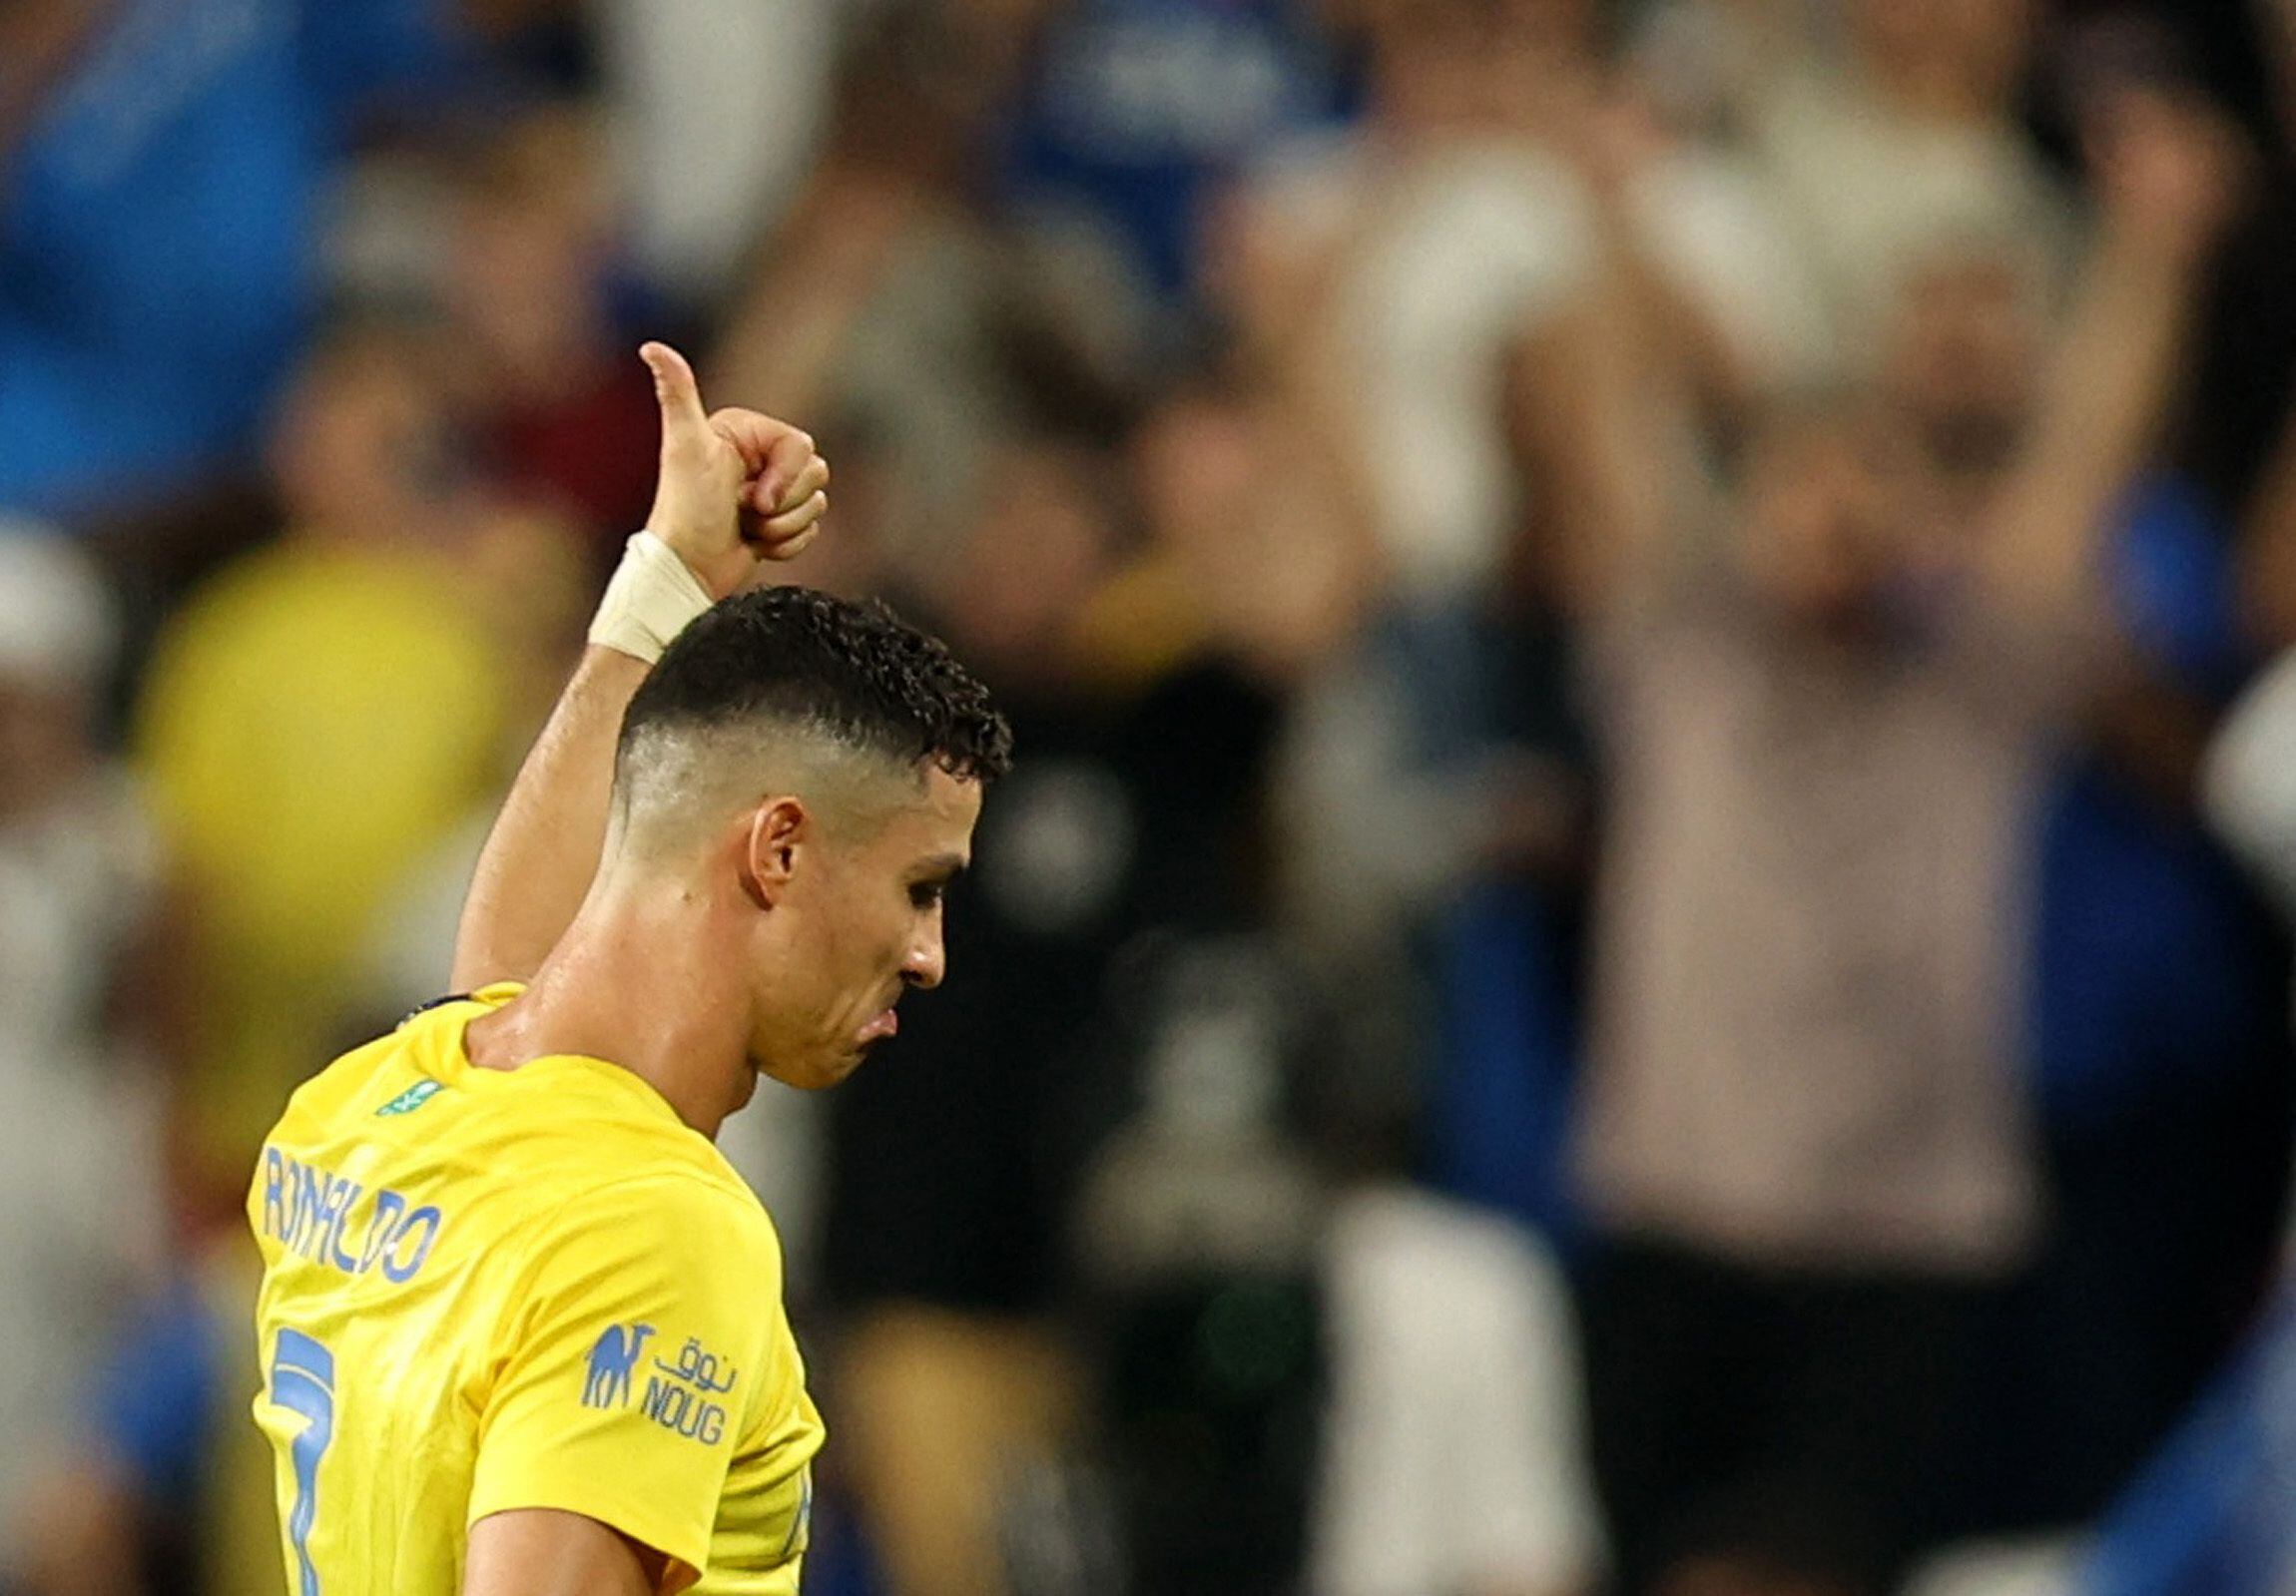 Cristiano Ronaldo es el futbolista más buscado en Google Colombia por encima de las figuras nacionales - crédito REUTERS